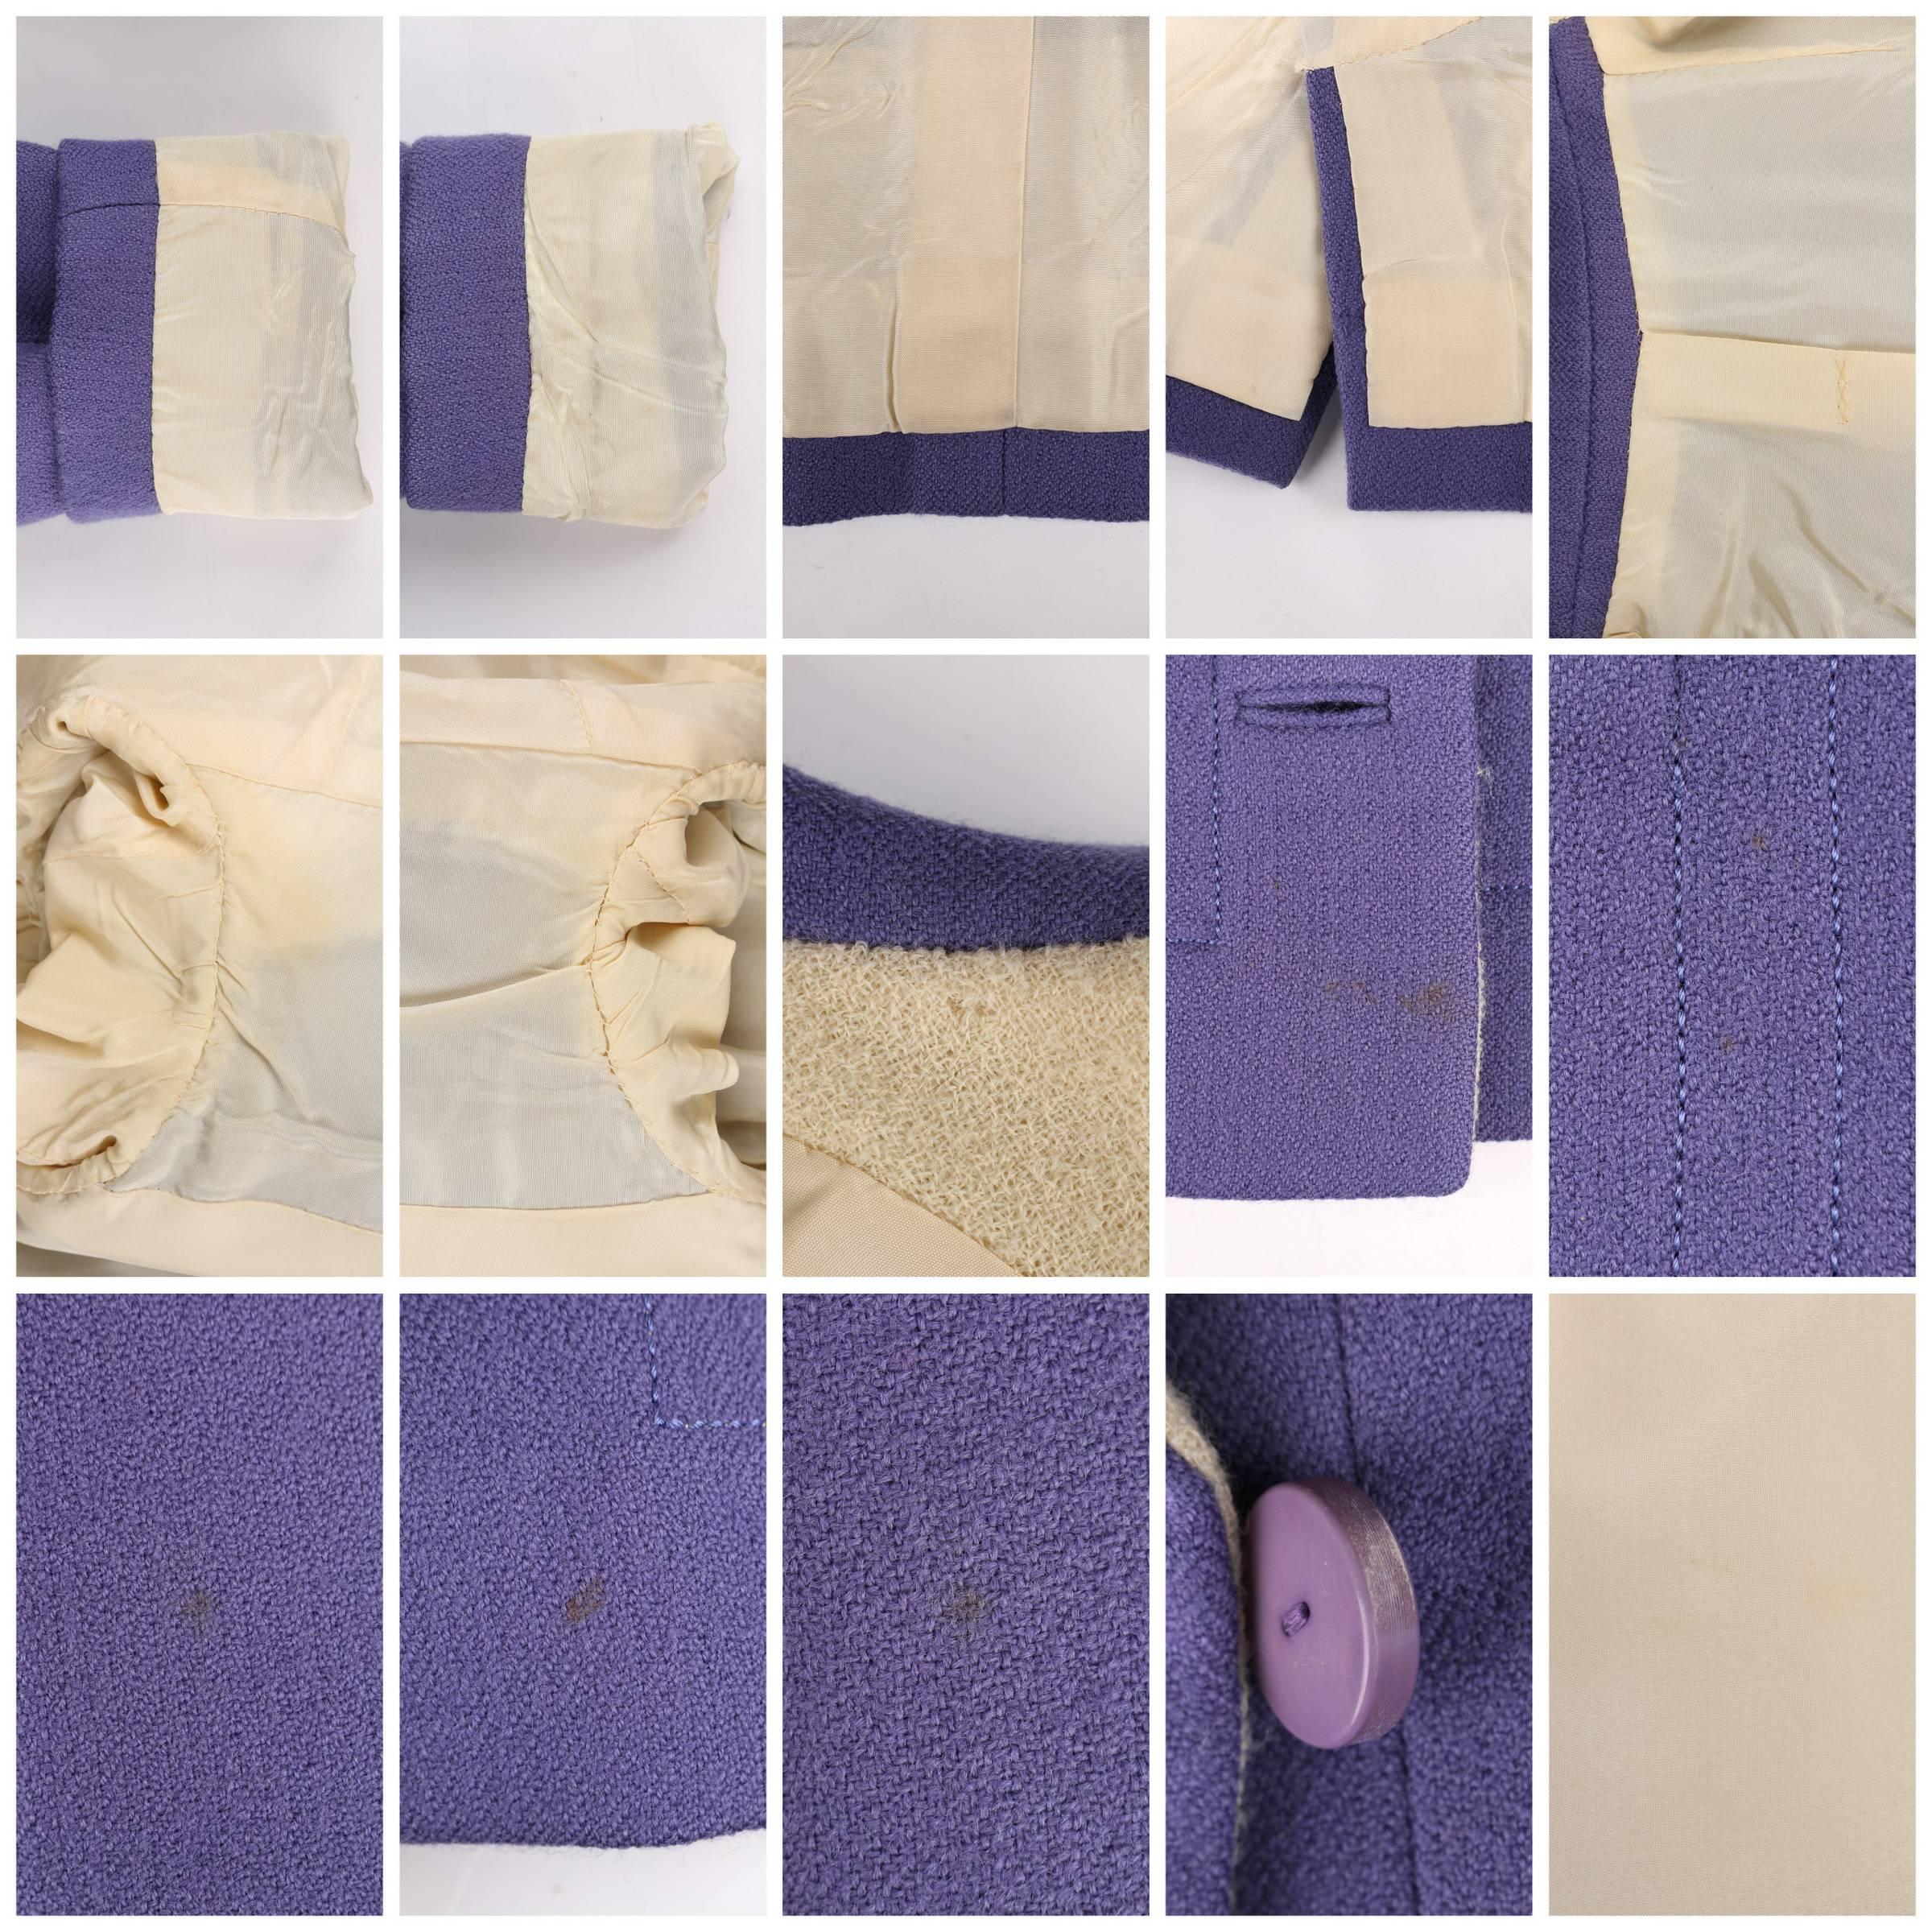 JEANNE LANVIN c.1960's 3 Piece Purple & Ivory Wool Blazer Tank Top Skirt Suit 2